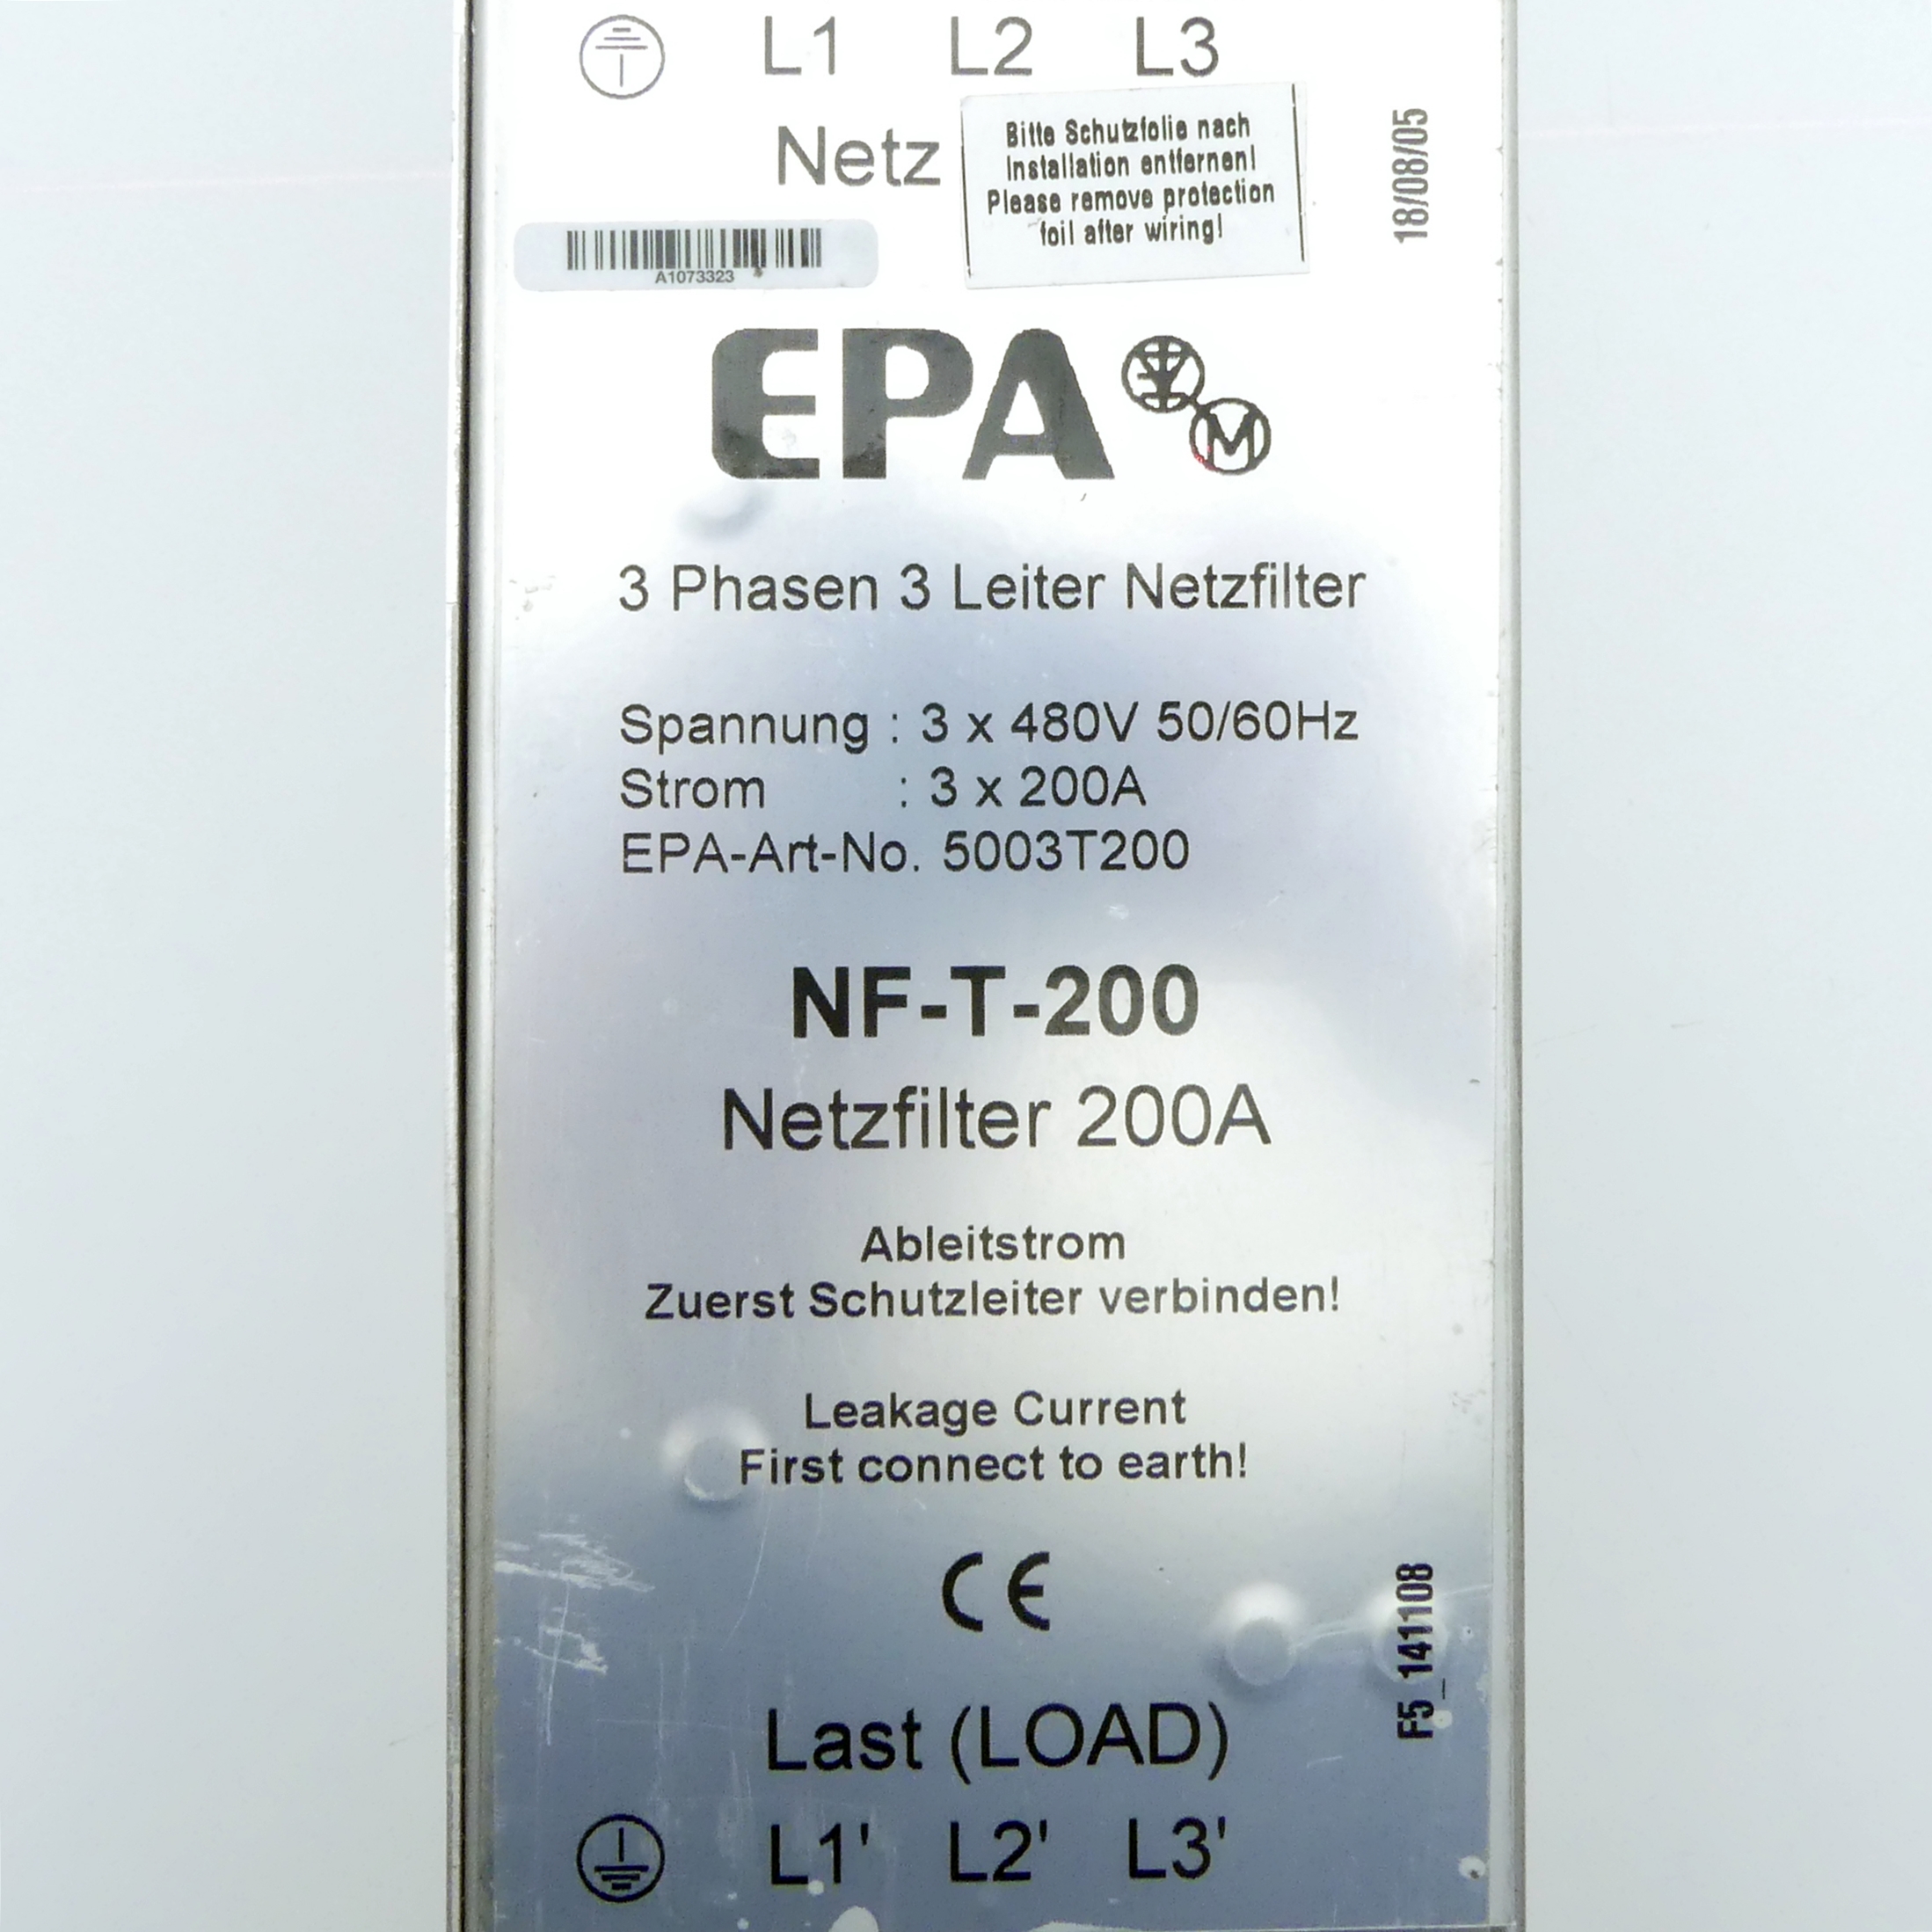 3 Phasen 3 Leiter Netzfilter NF-T-200 